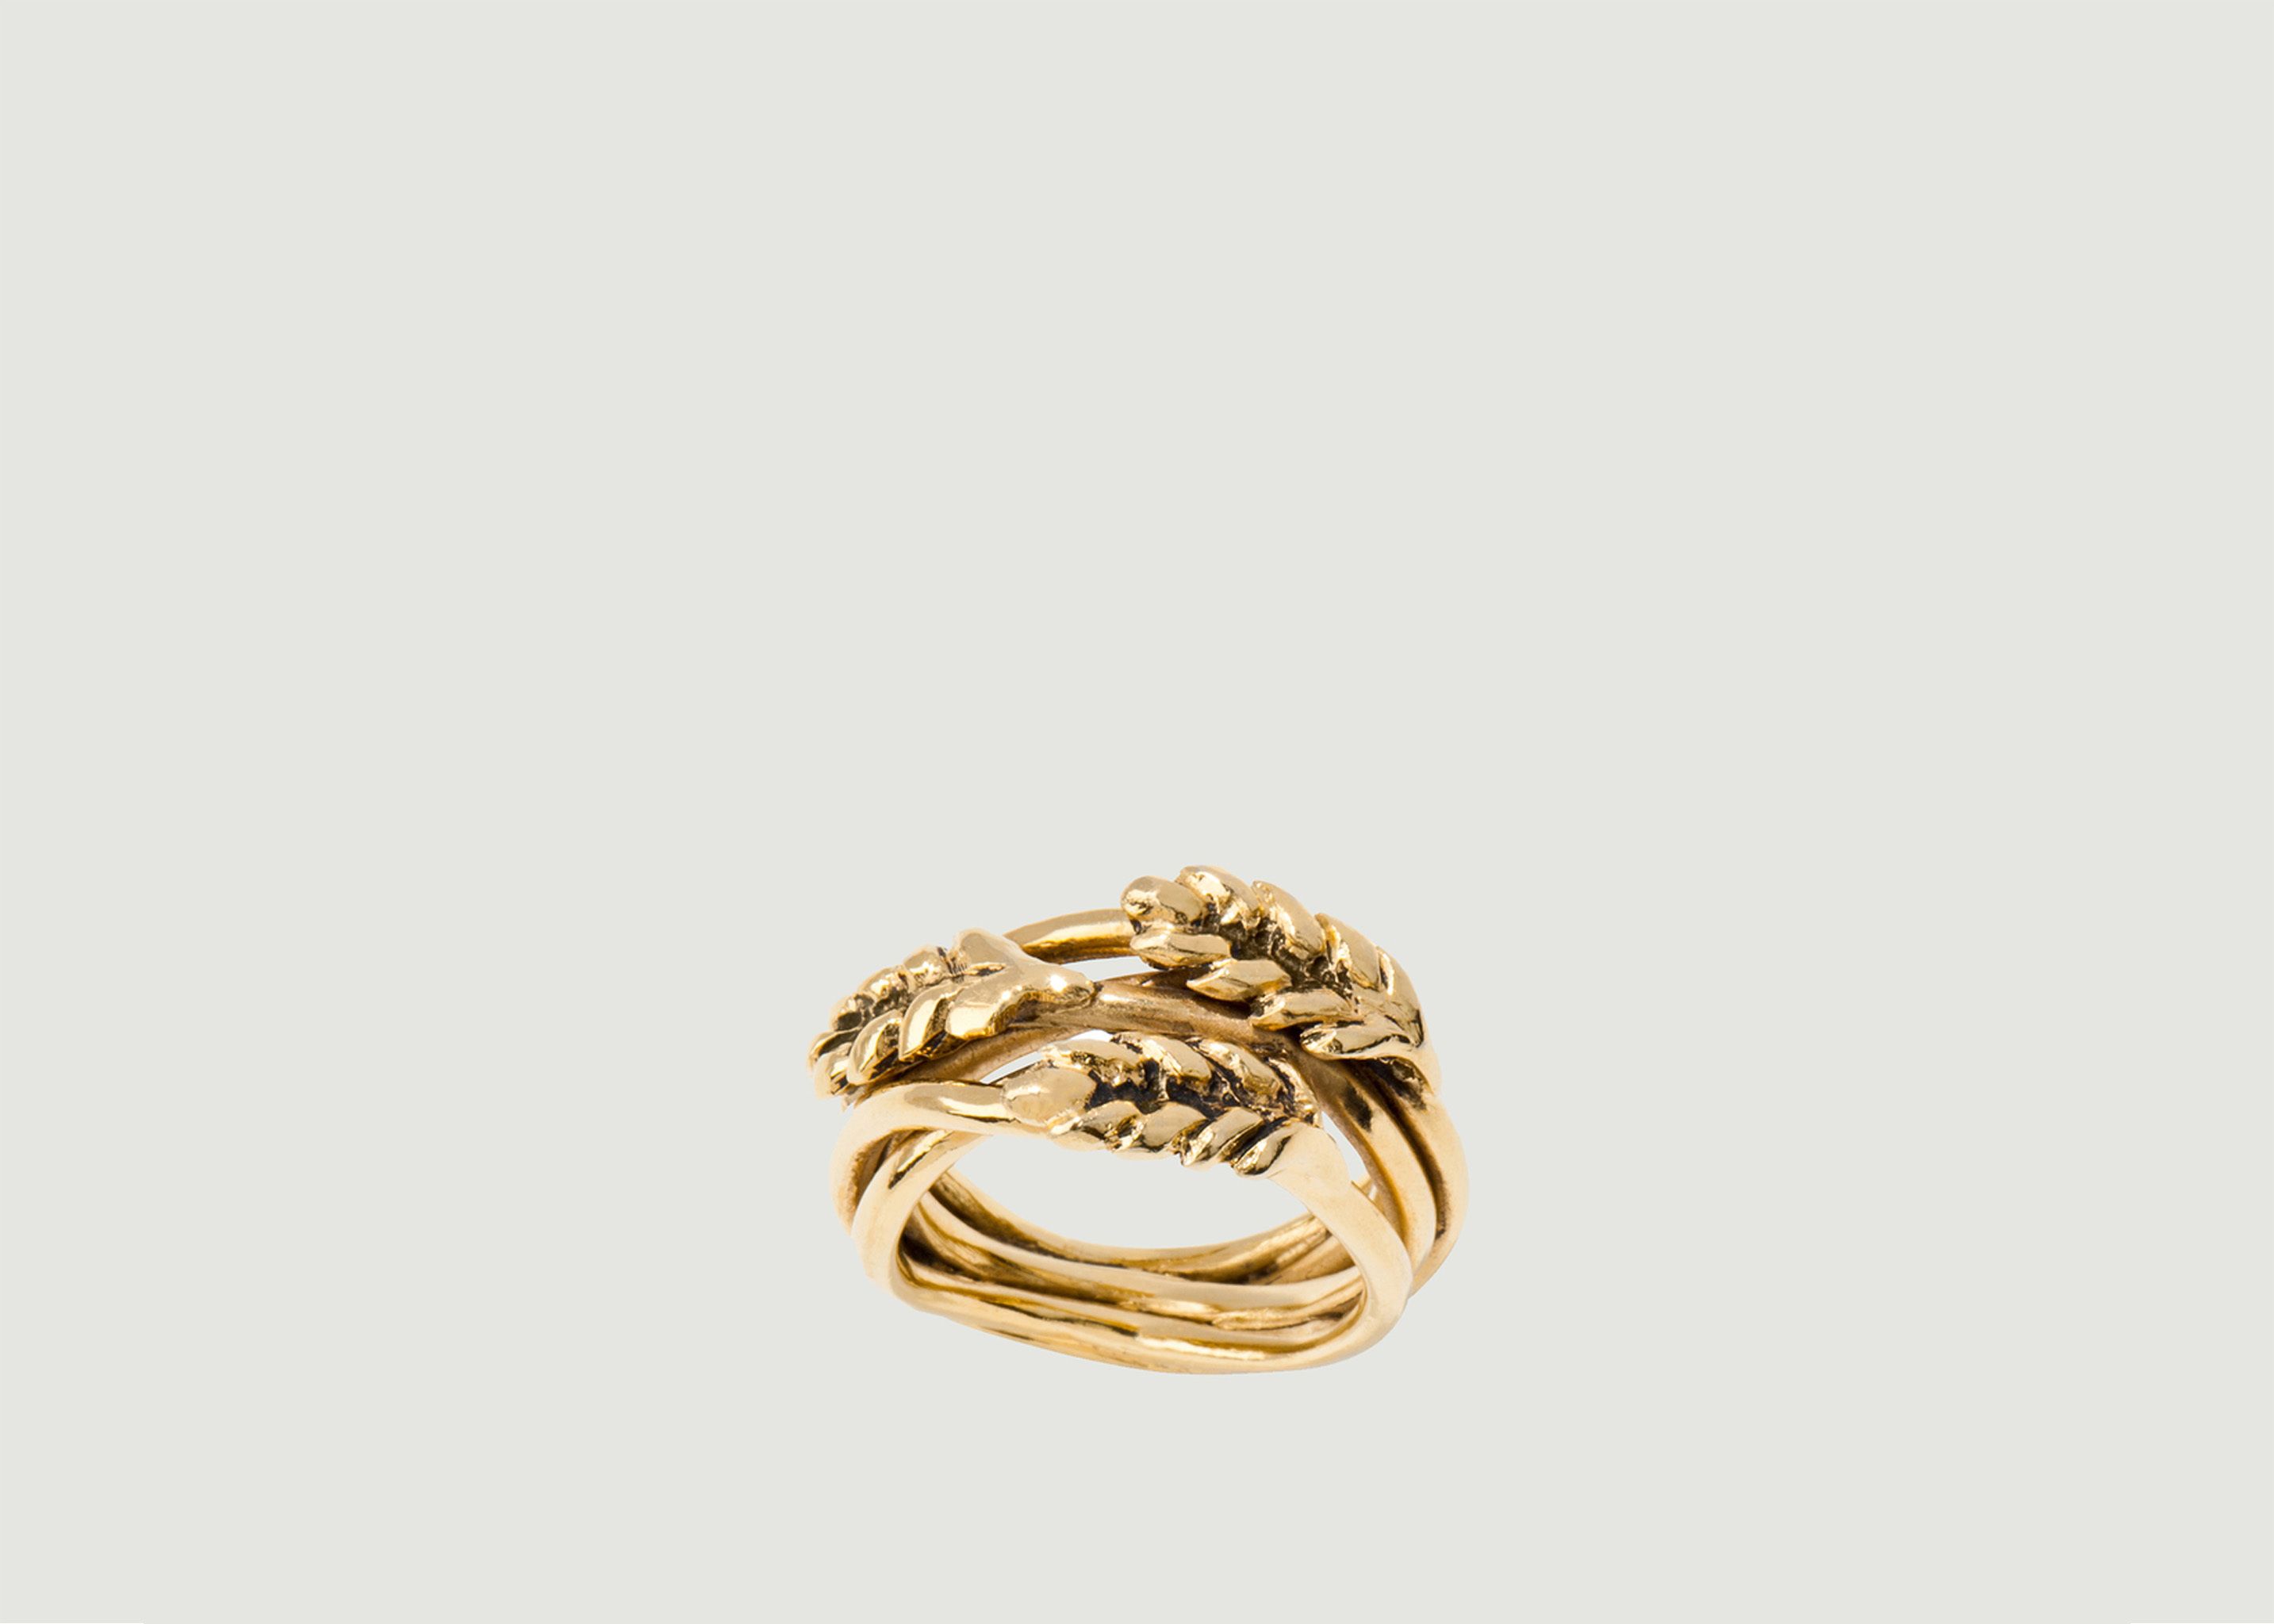 Multis Épis de Blé vergoldeter Ring - Aurélie Bidermann